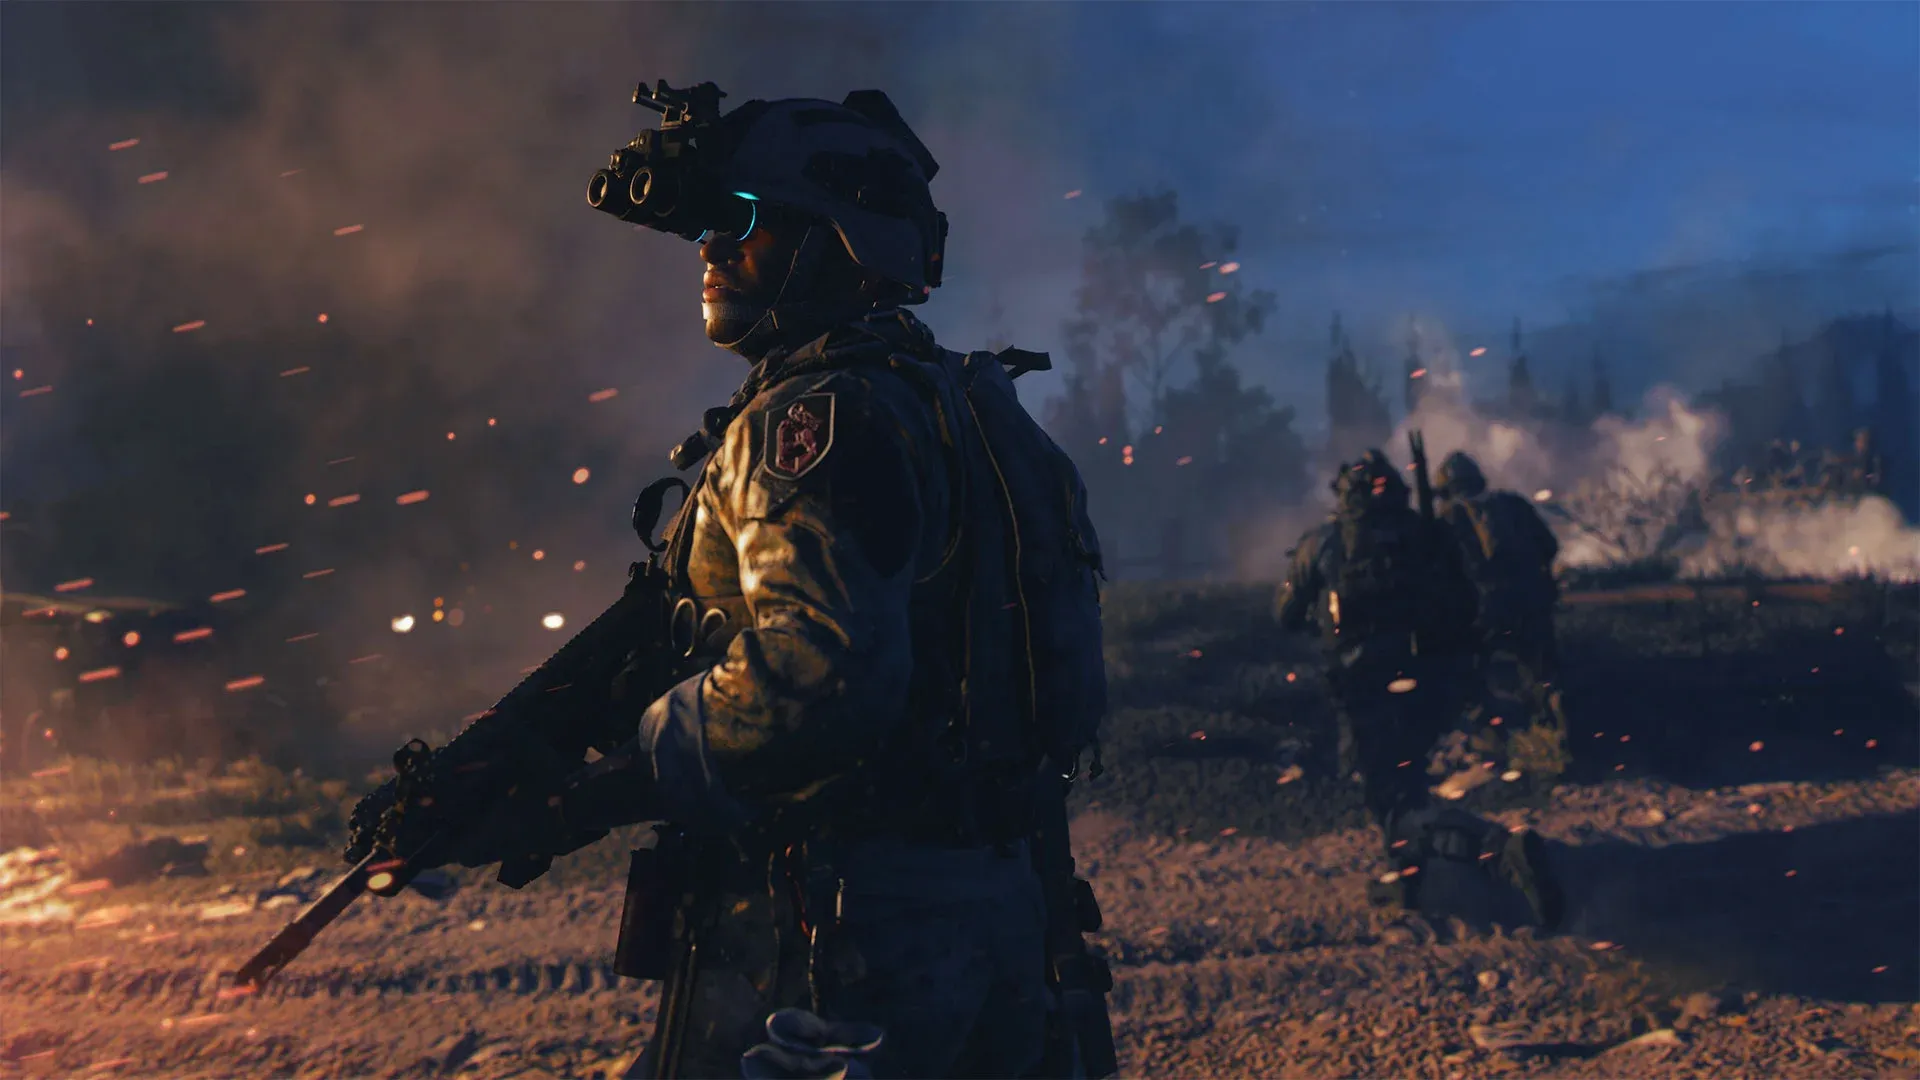 Jogo Call Of Duty Advanced Warfare Xbox One Activision com o Melhor Preço é  no Zoom